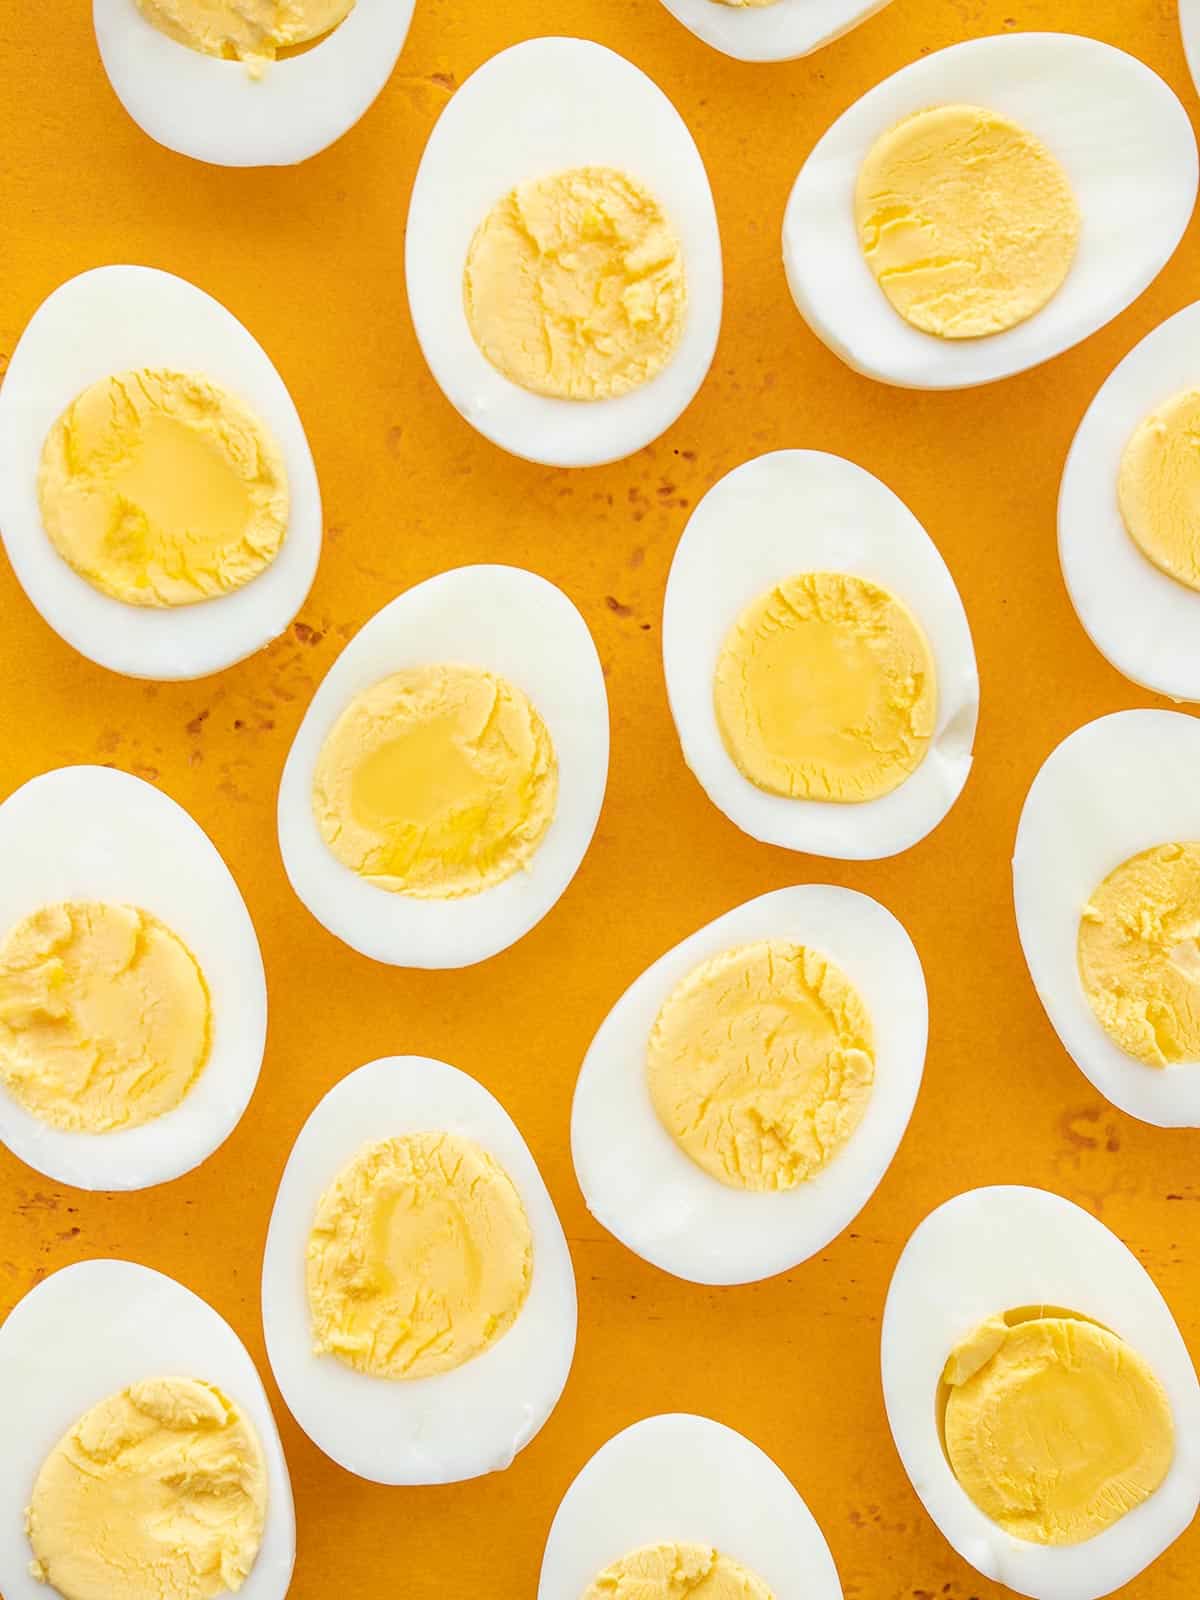 How To Make Hard-Boiled Eggs - Best Hard-Boiled Egg Method